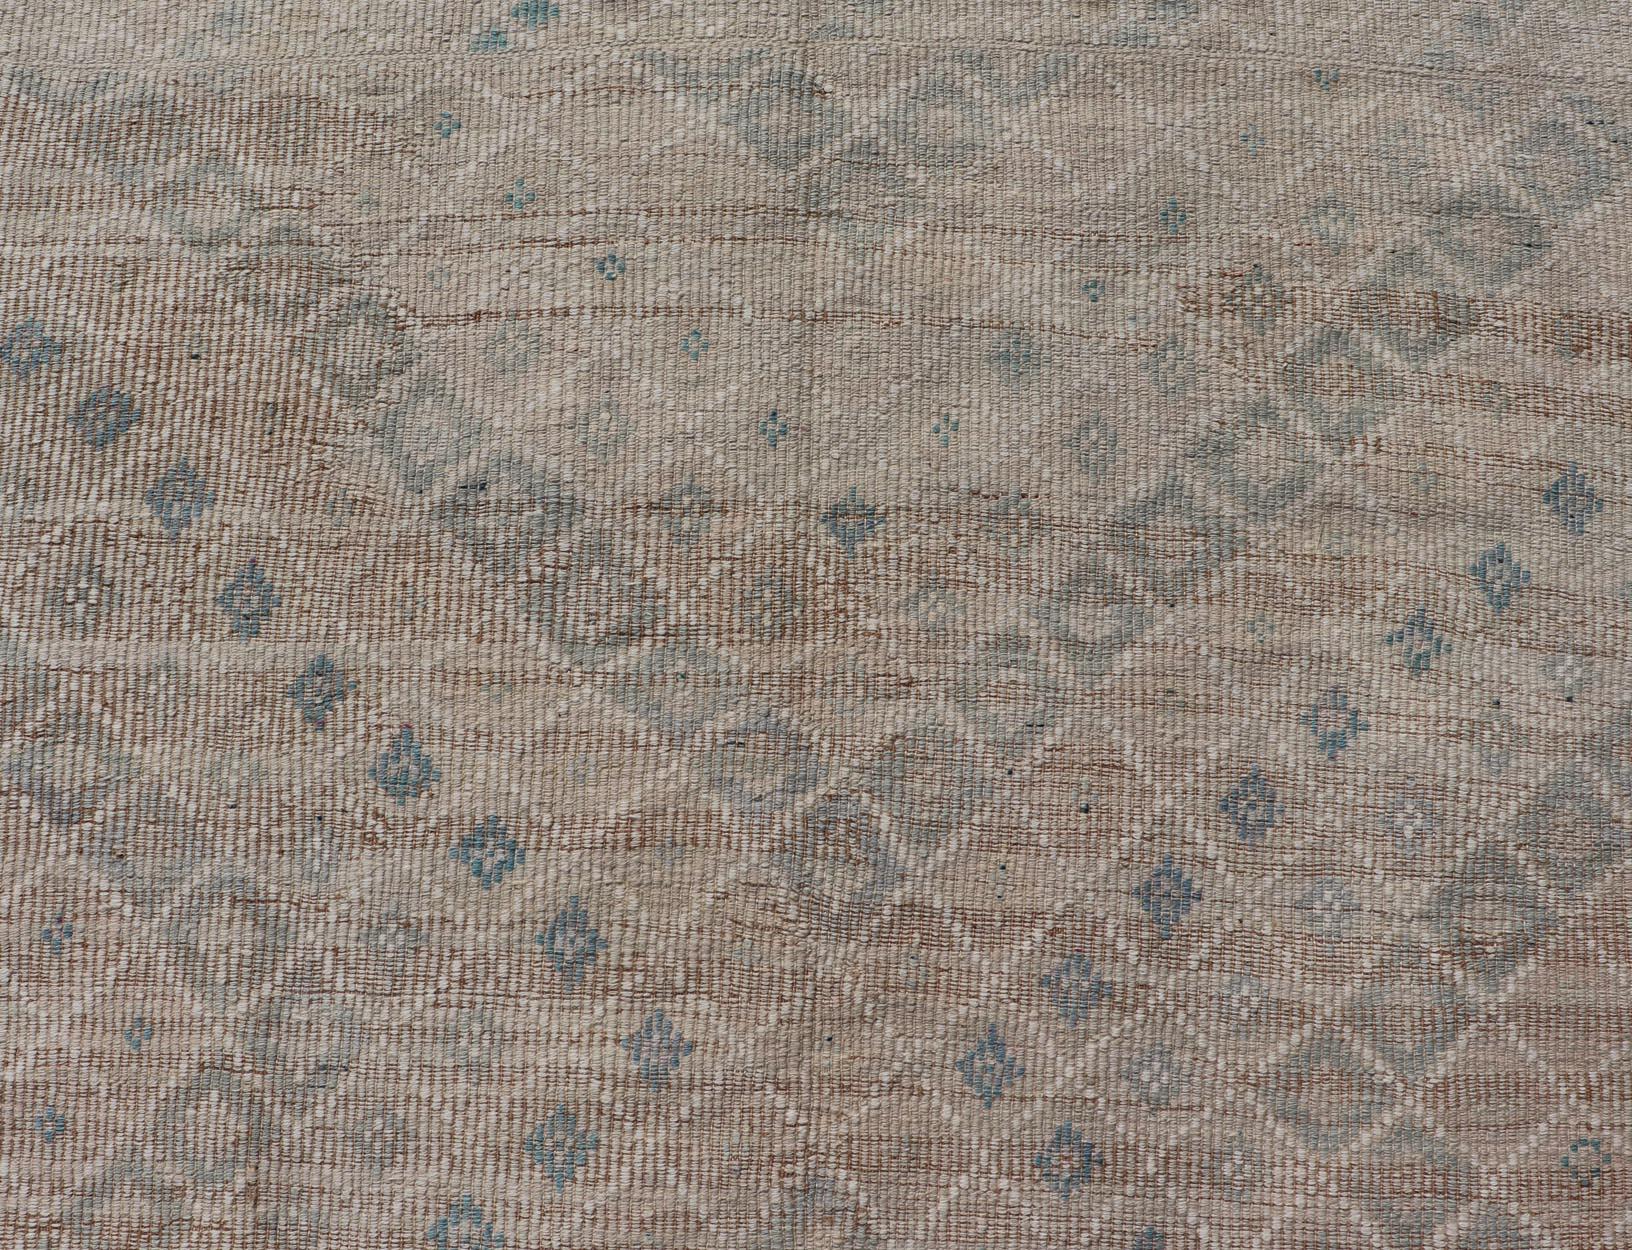 Vintage Turkish Embroidered Flat-Weave Rug Diamond Shape Geometric Design 1